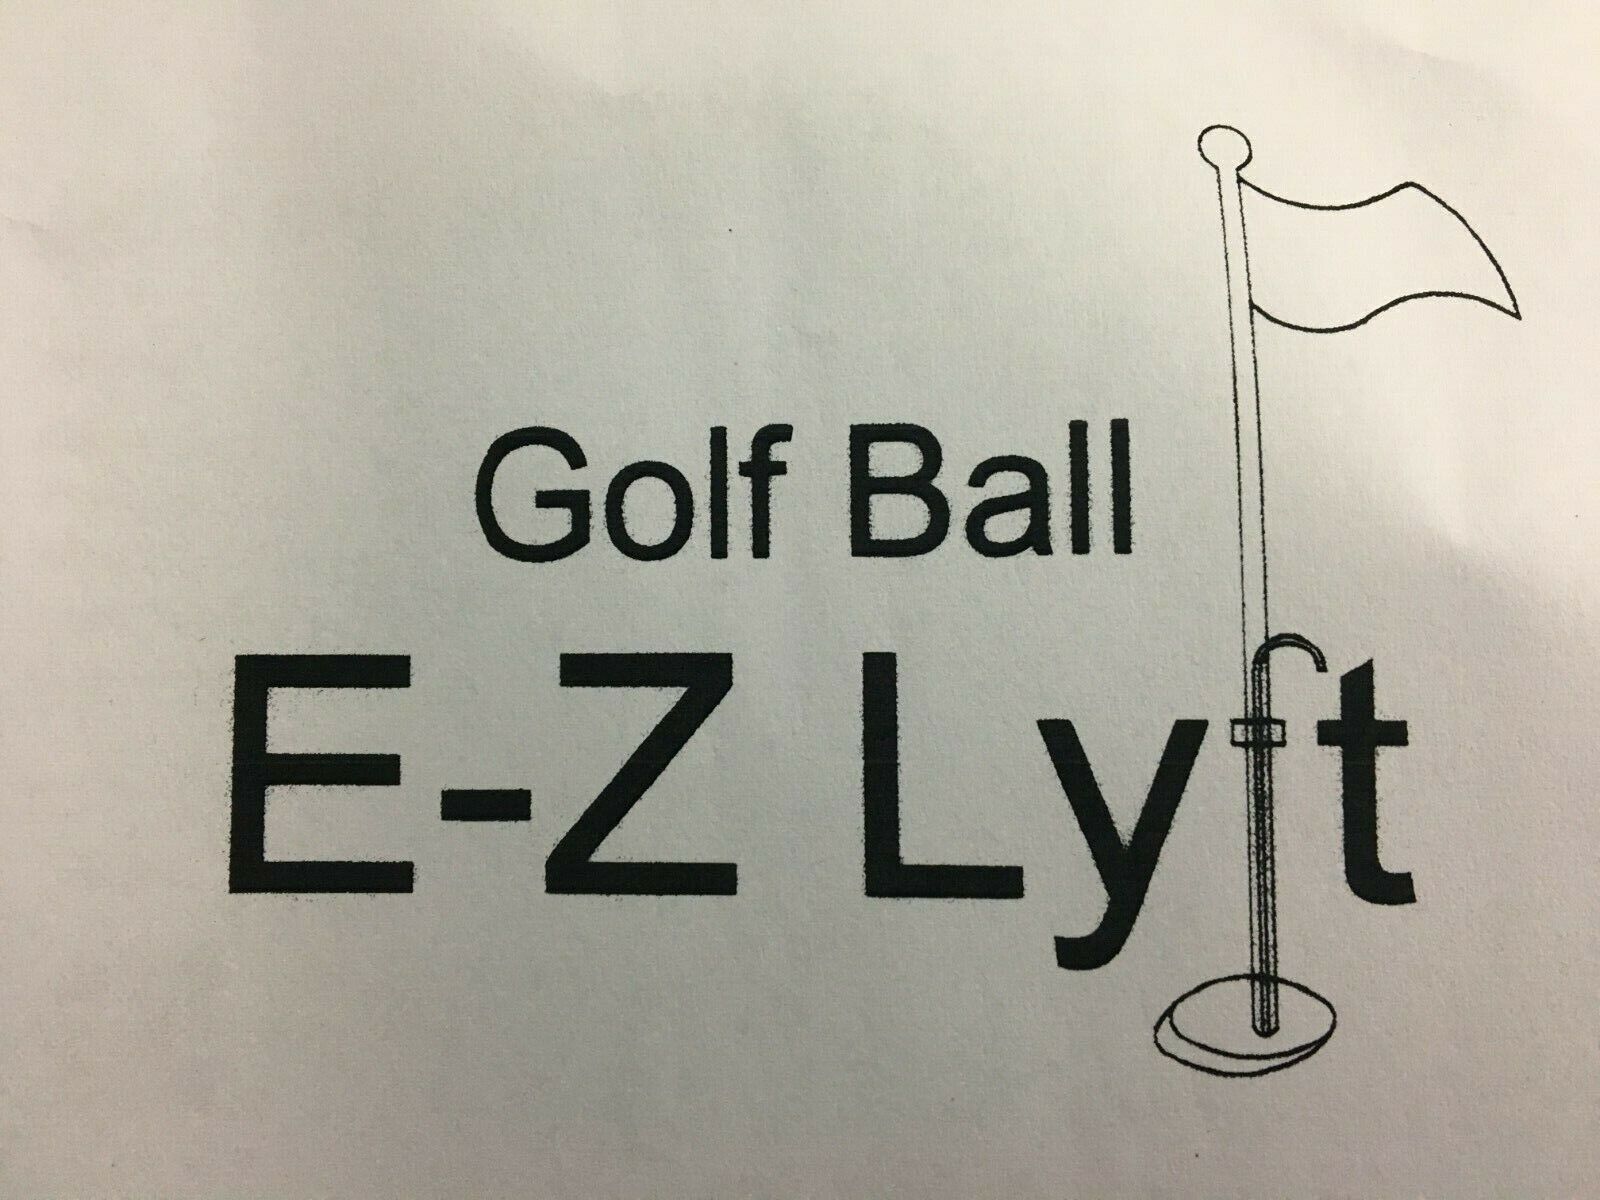 Golf Ball Ez-lyft Contactless Golf Ball Retrieval System Full Set Of 18 / Mm0700